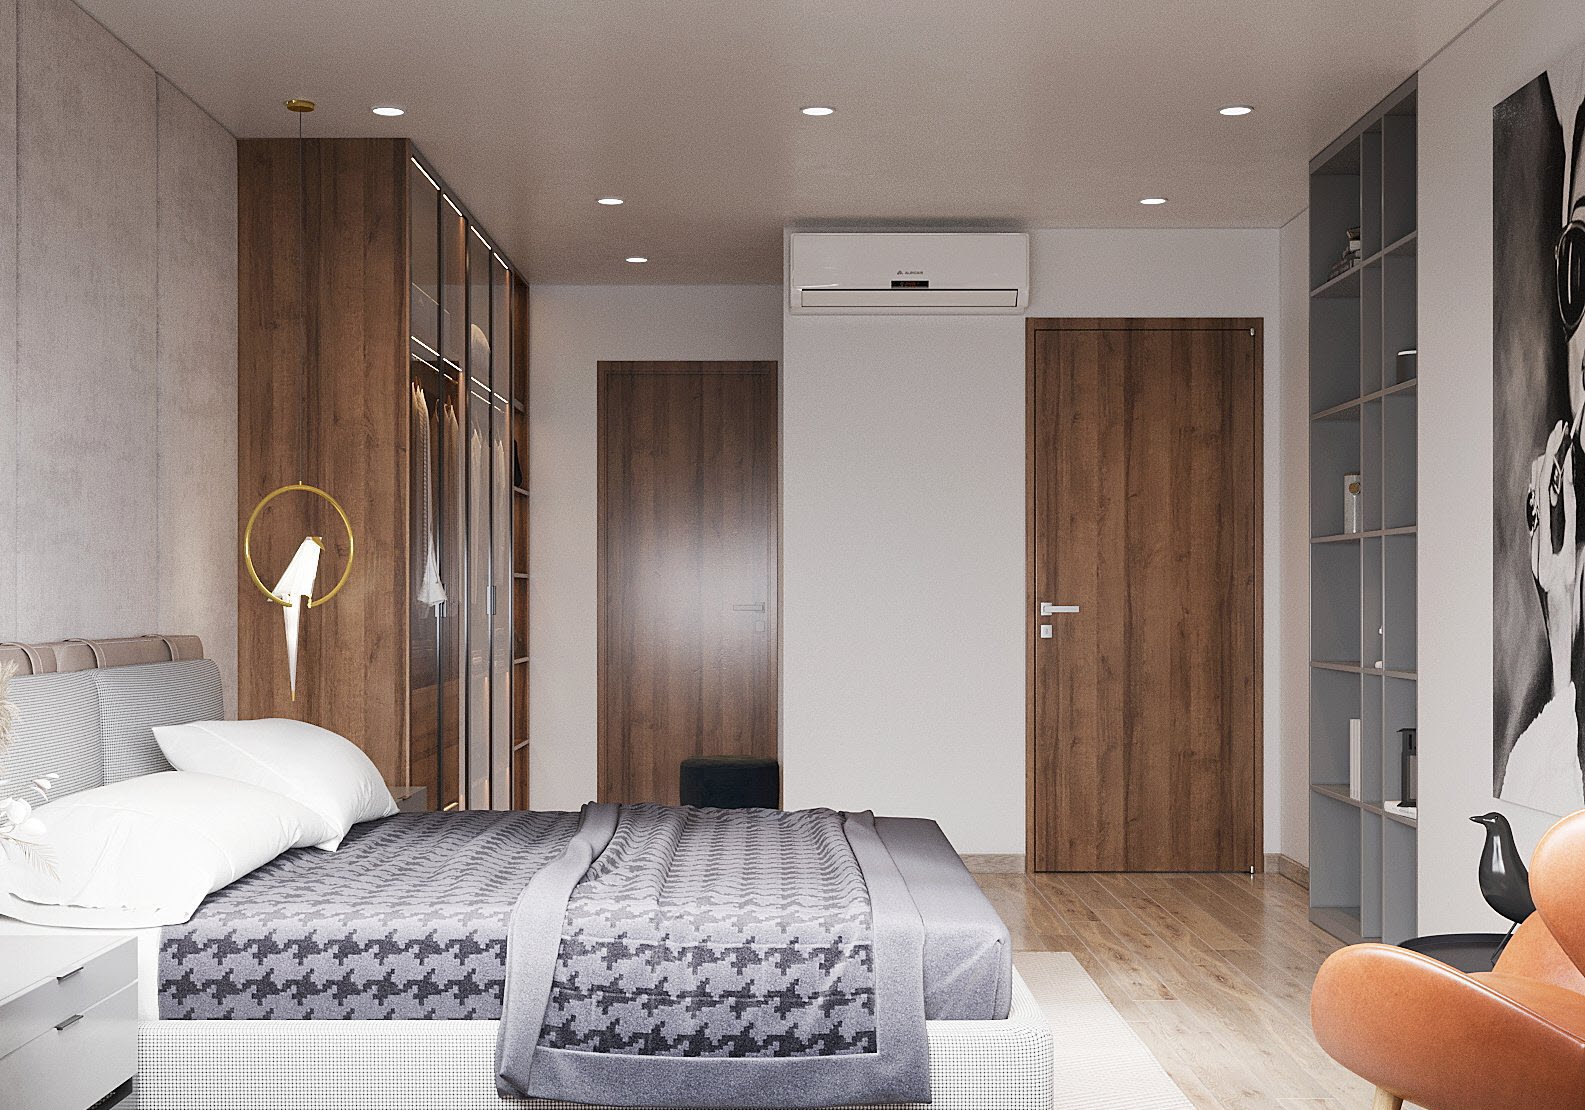 phòng ngủ với sự phối kết giữa 3 tông màu chủ đạo trắng - xám - nâu gỗ mang đến bầu không khí thư giãn, dễ chịu cho người ngủ trong phòng.